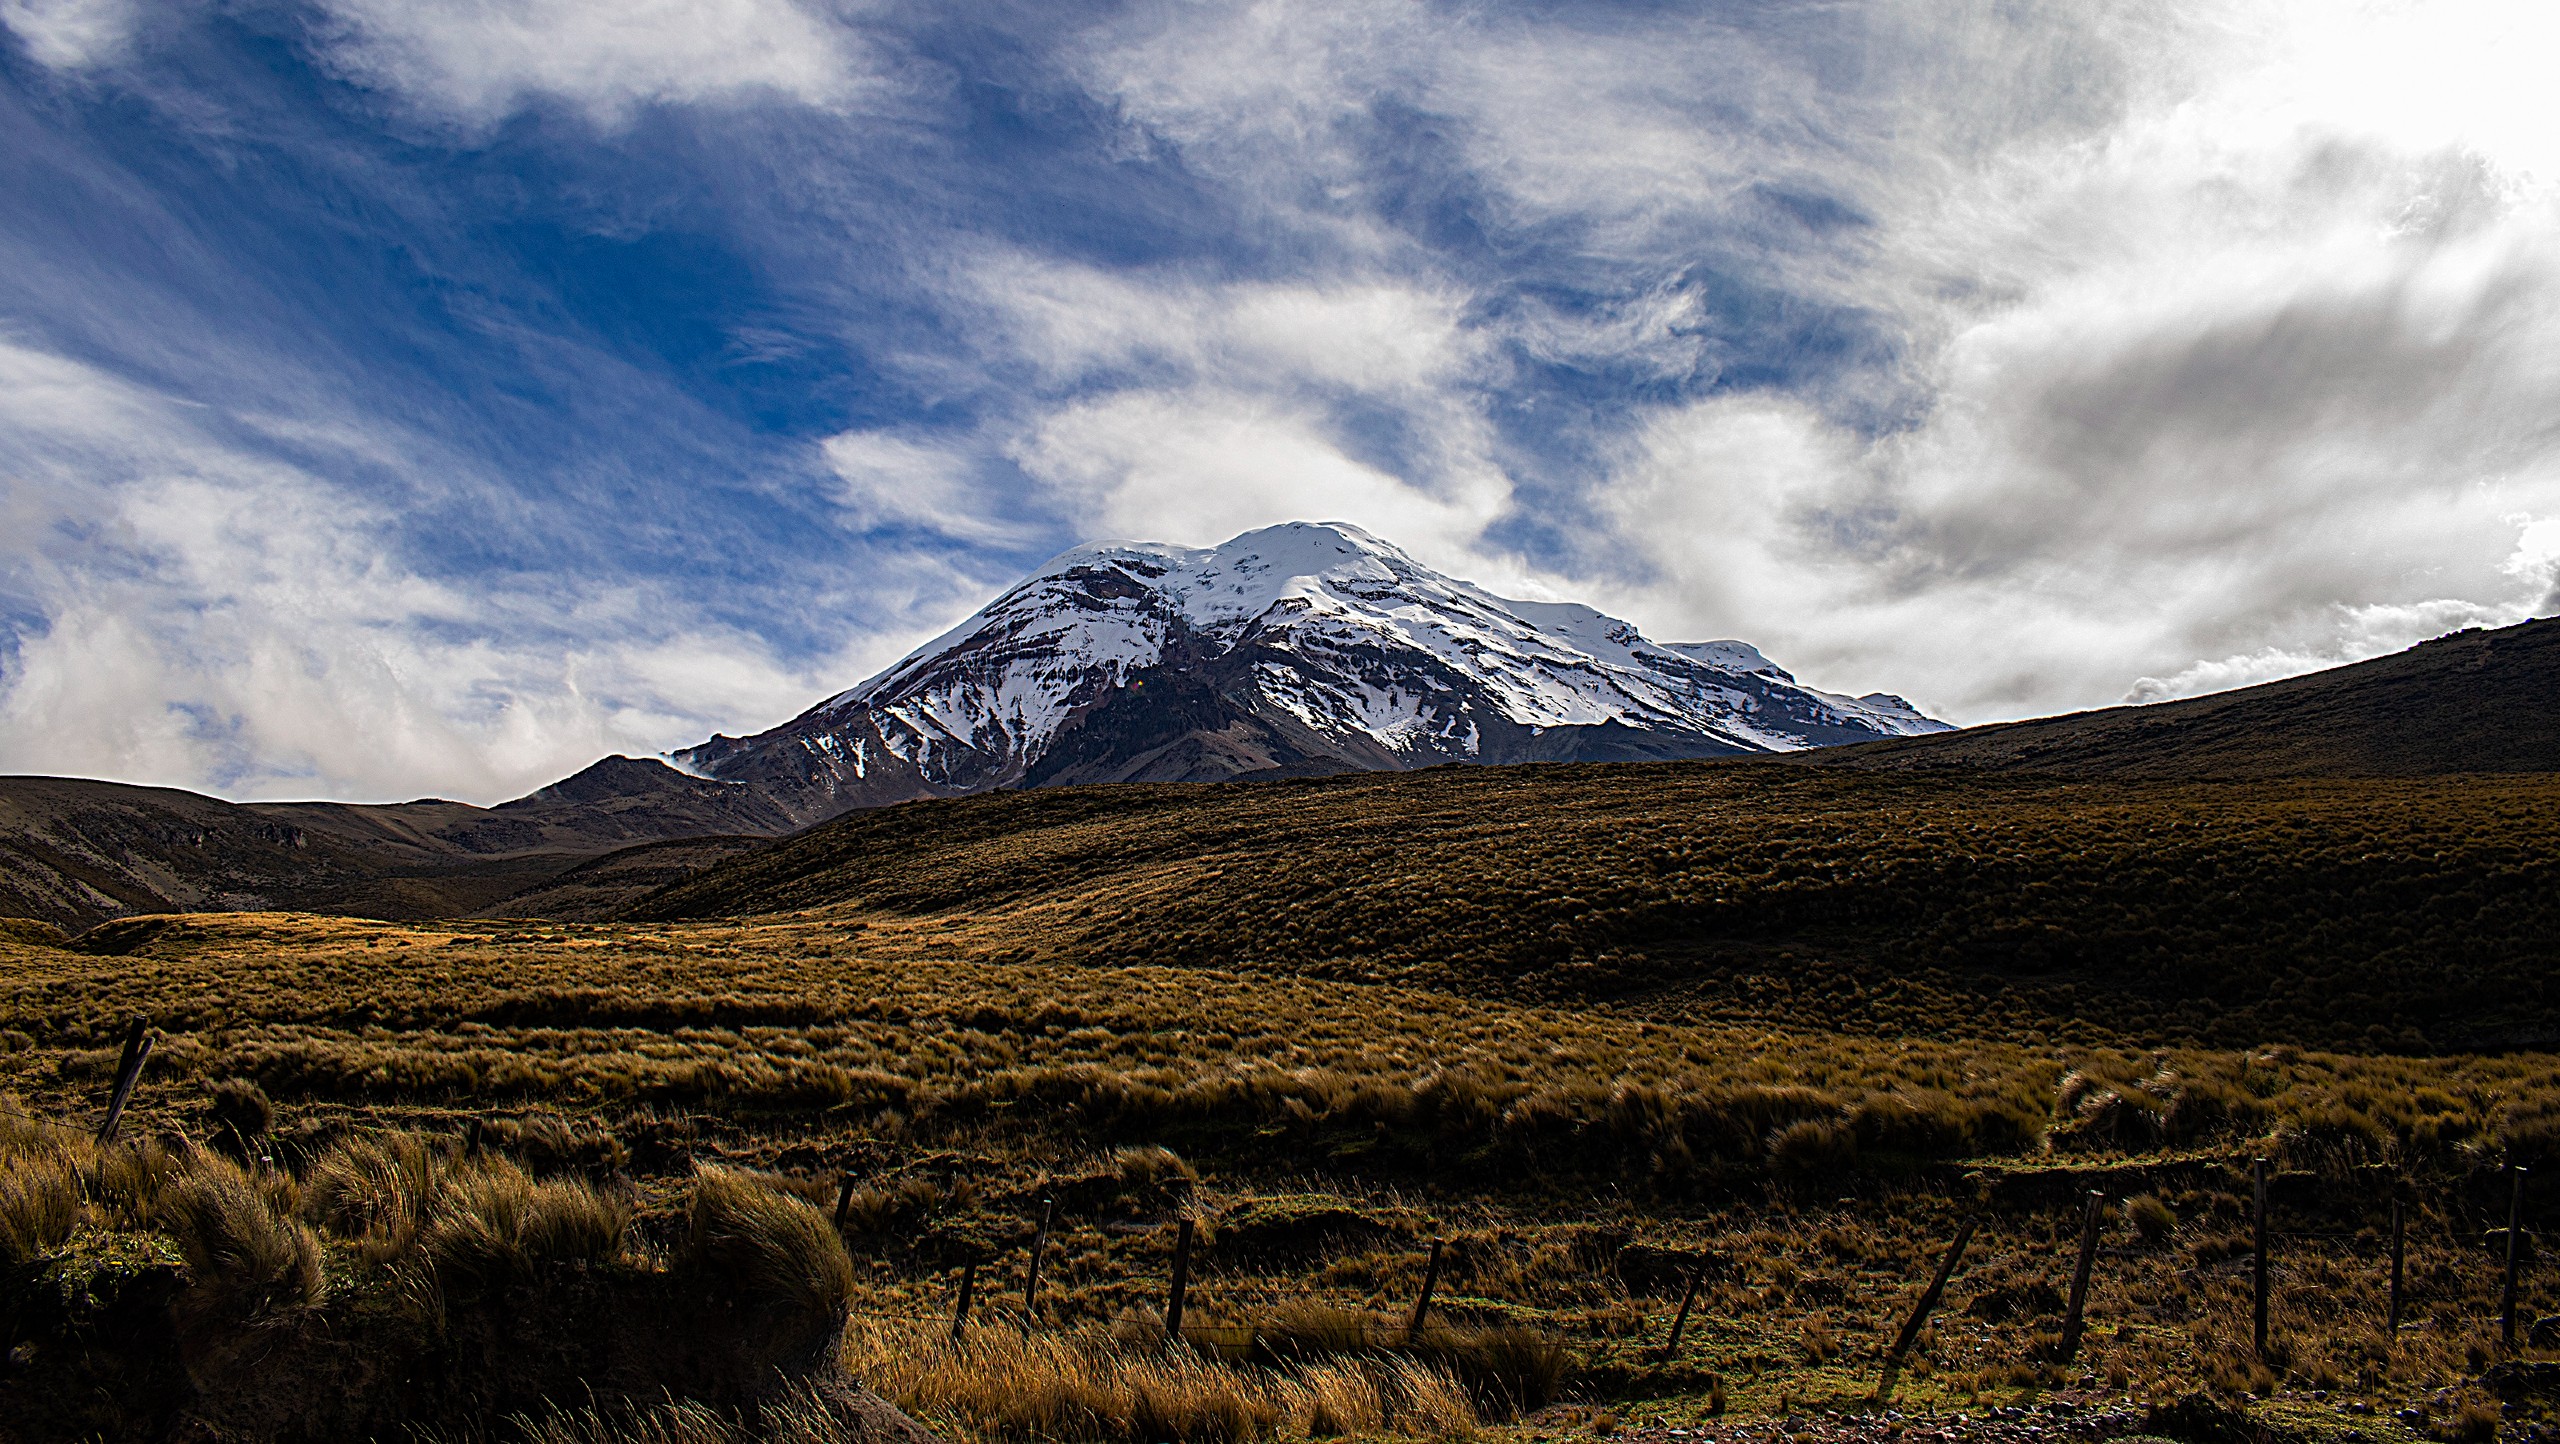 Chimborazo Climb